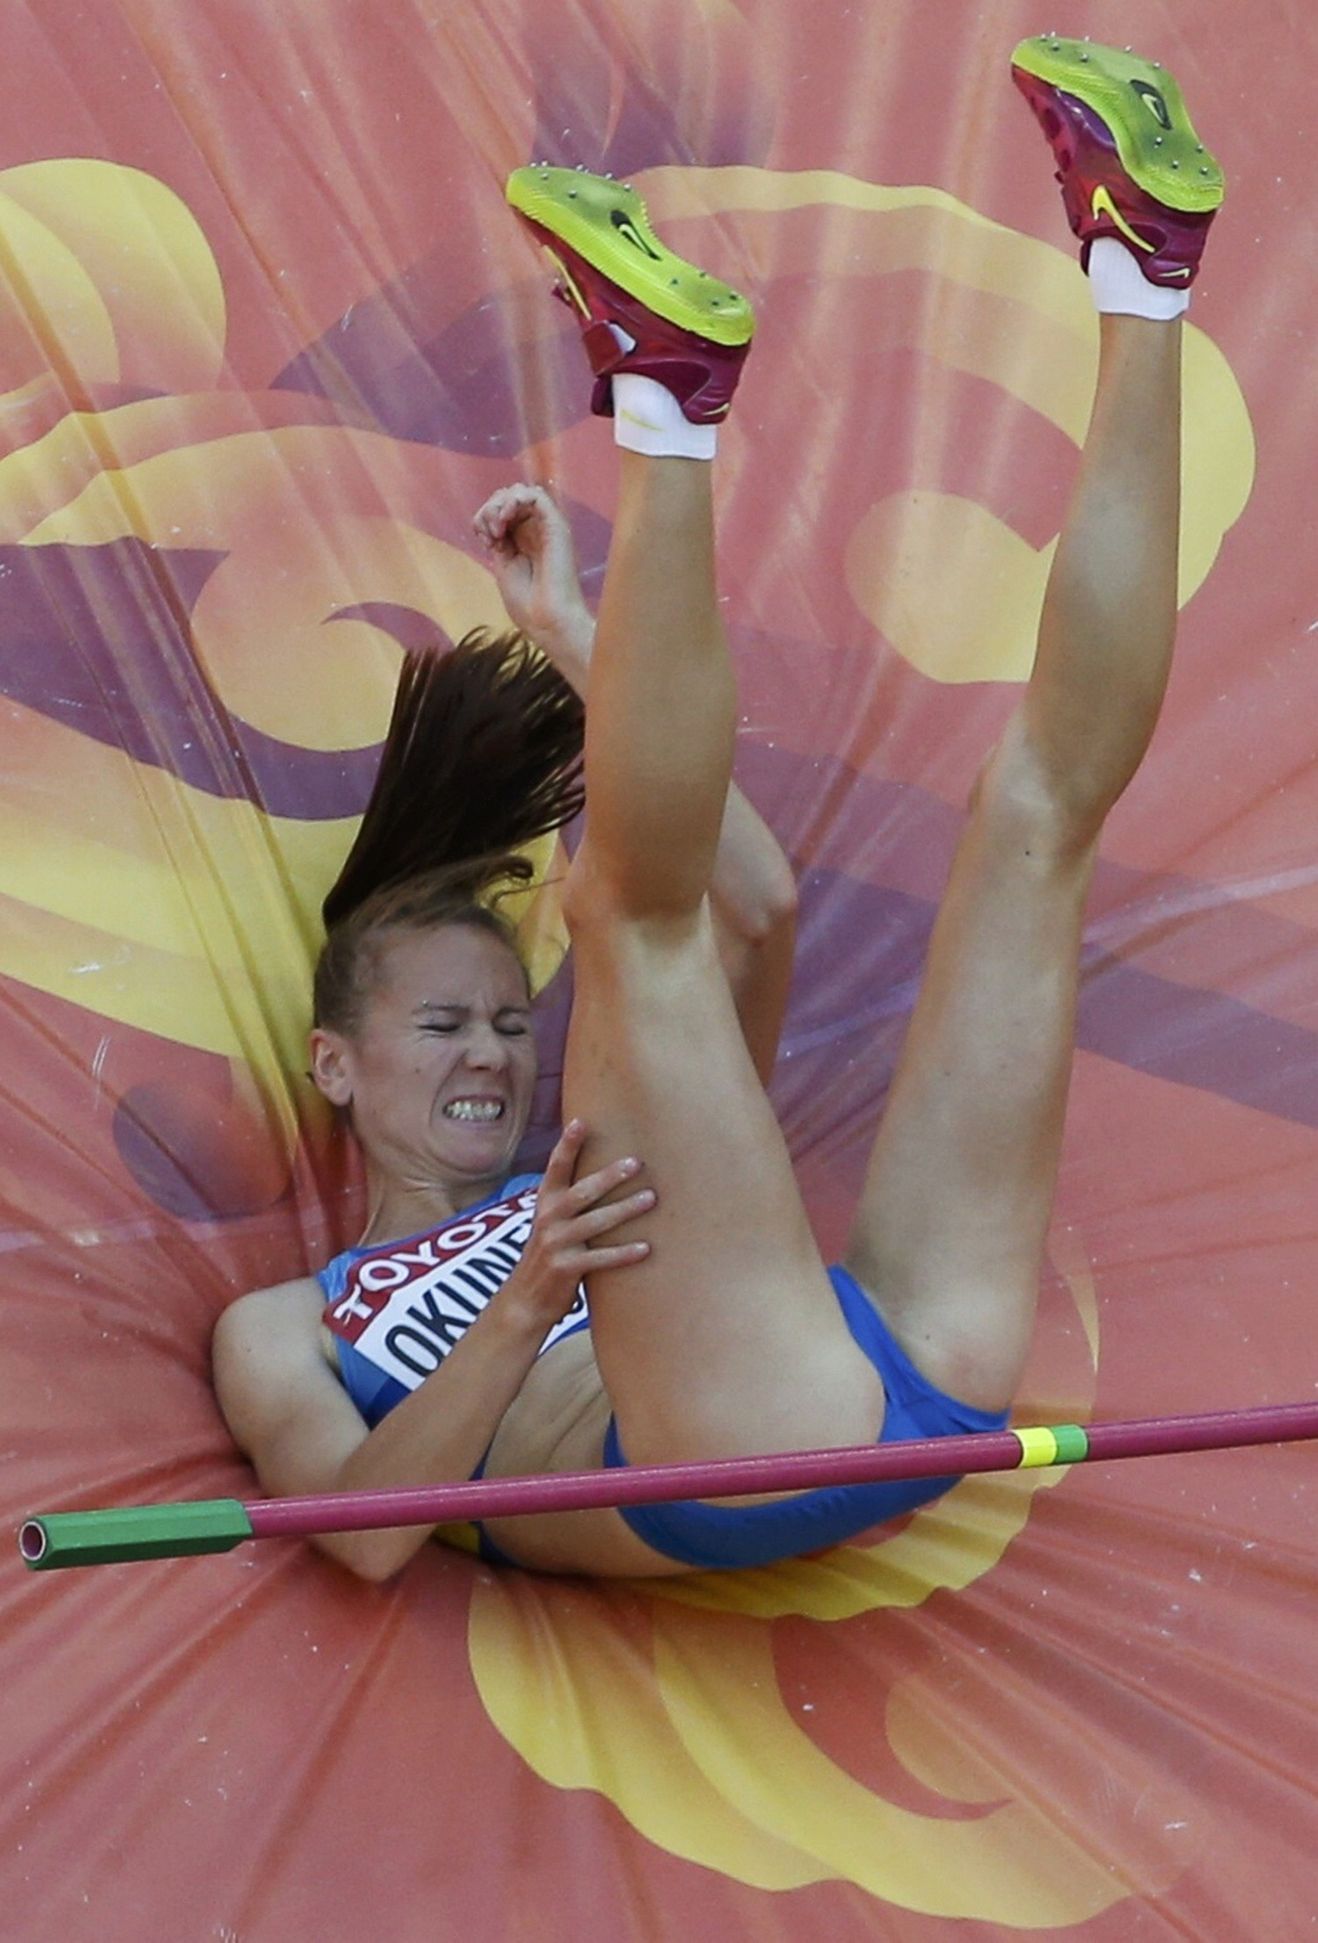 MS v atletice 2015: Oksana Okuněvová, výška